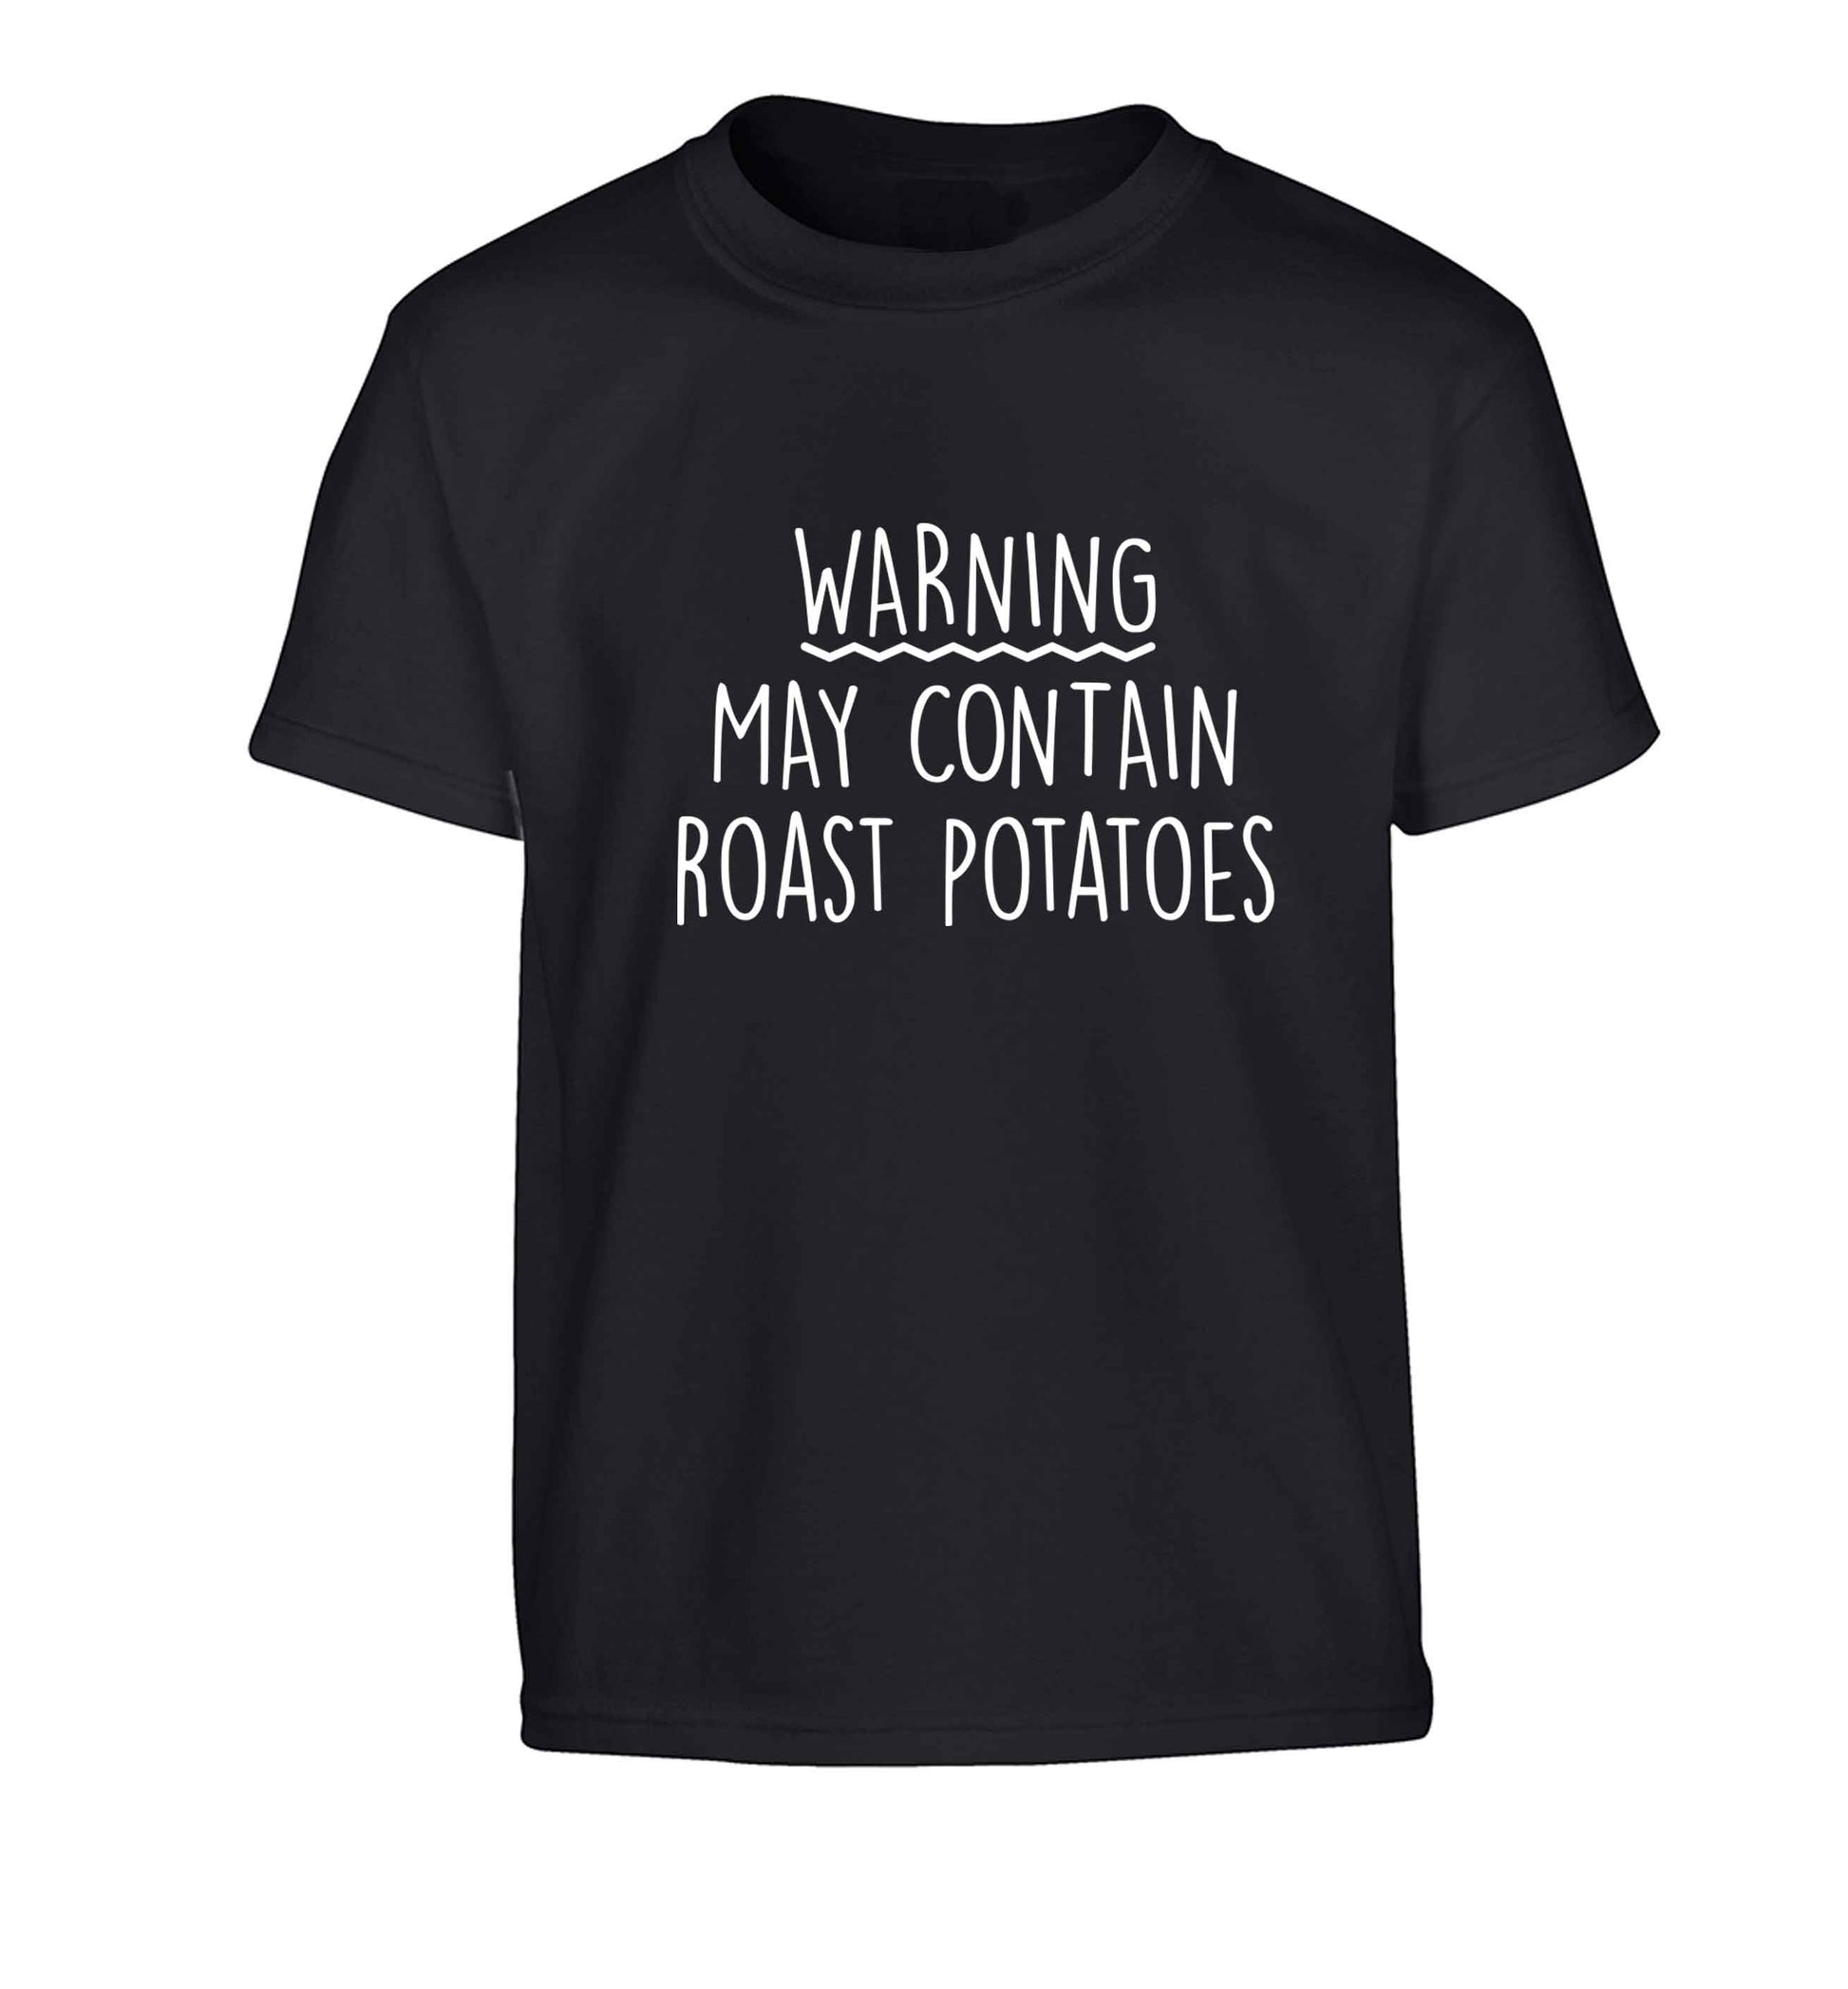 Warning may containg roast potatoes Children's black Tshirt 12-13 Years